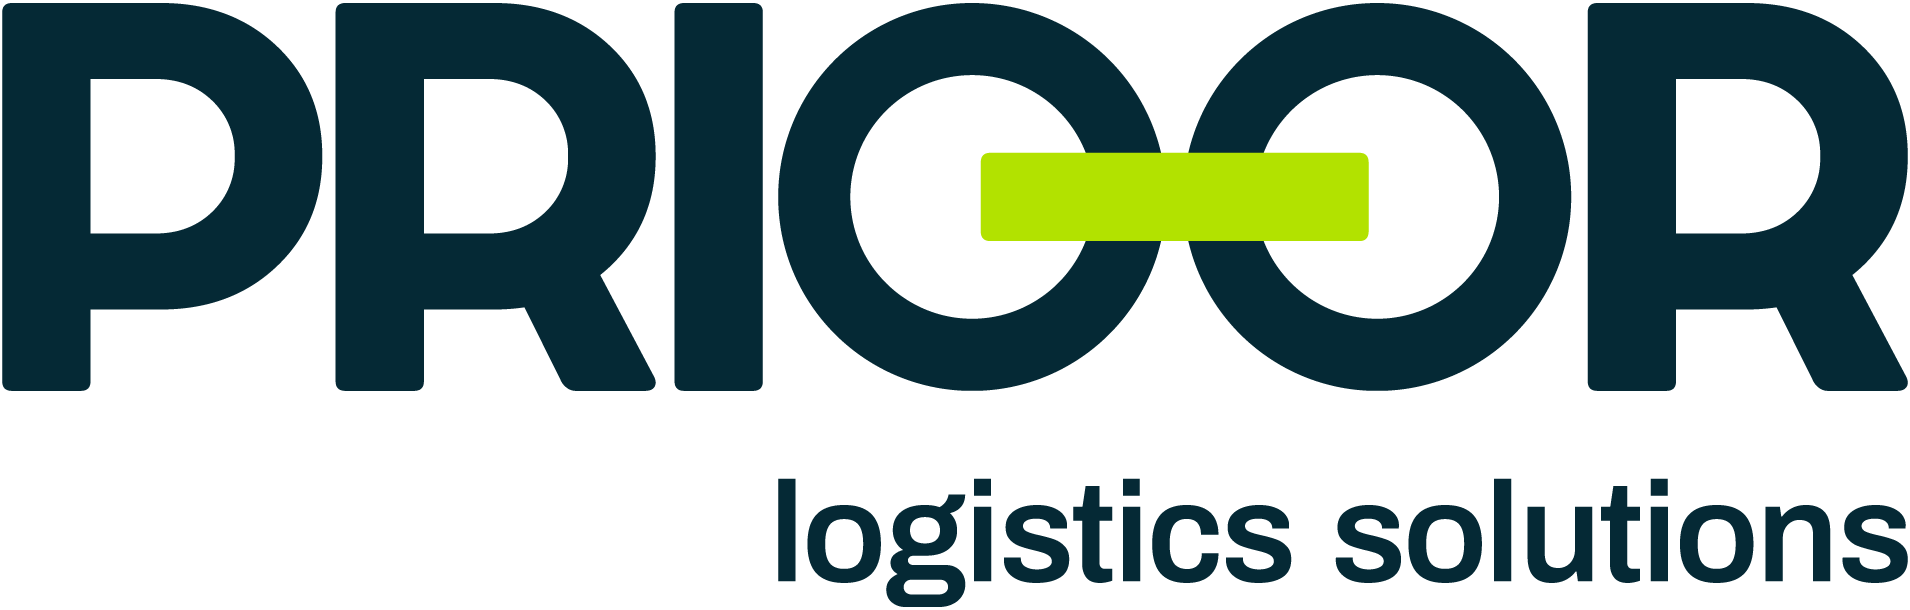 Prioor Logistics Solutions